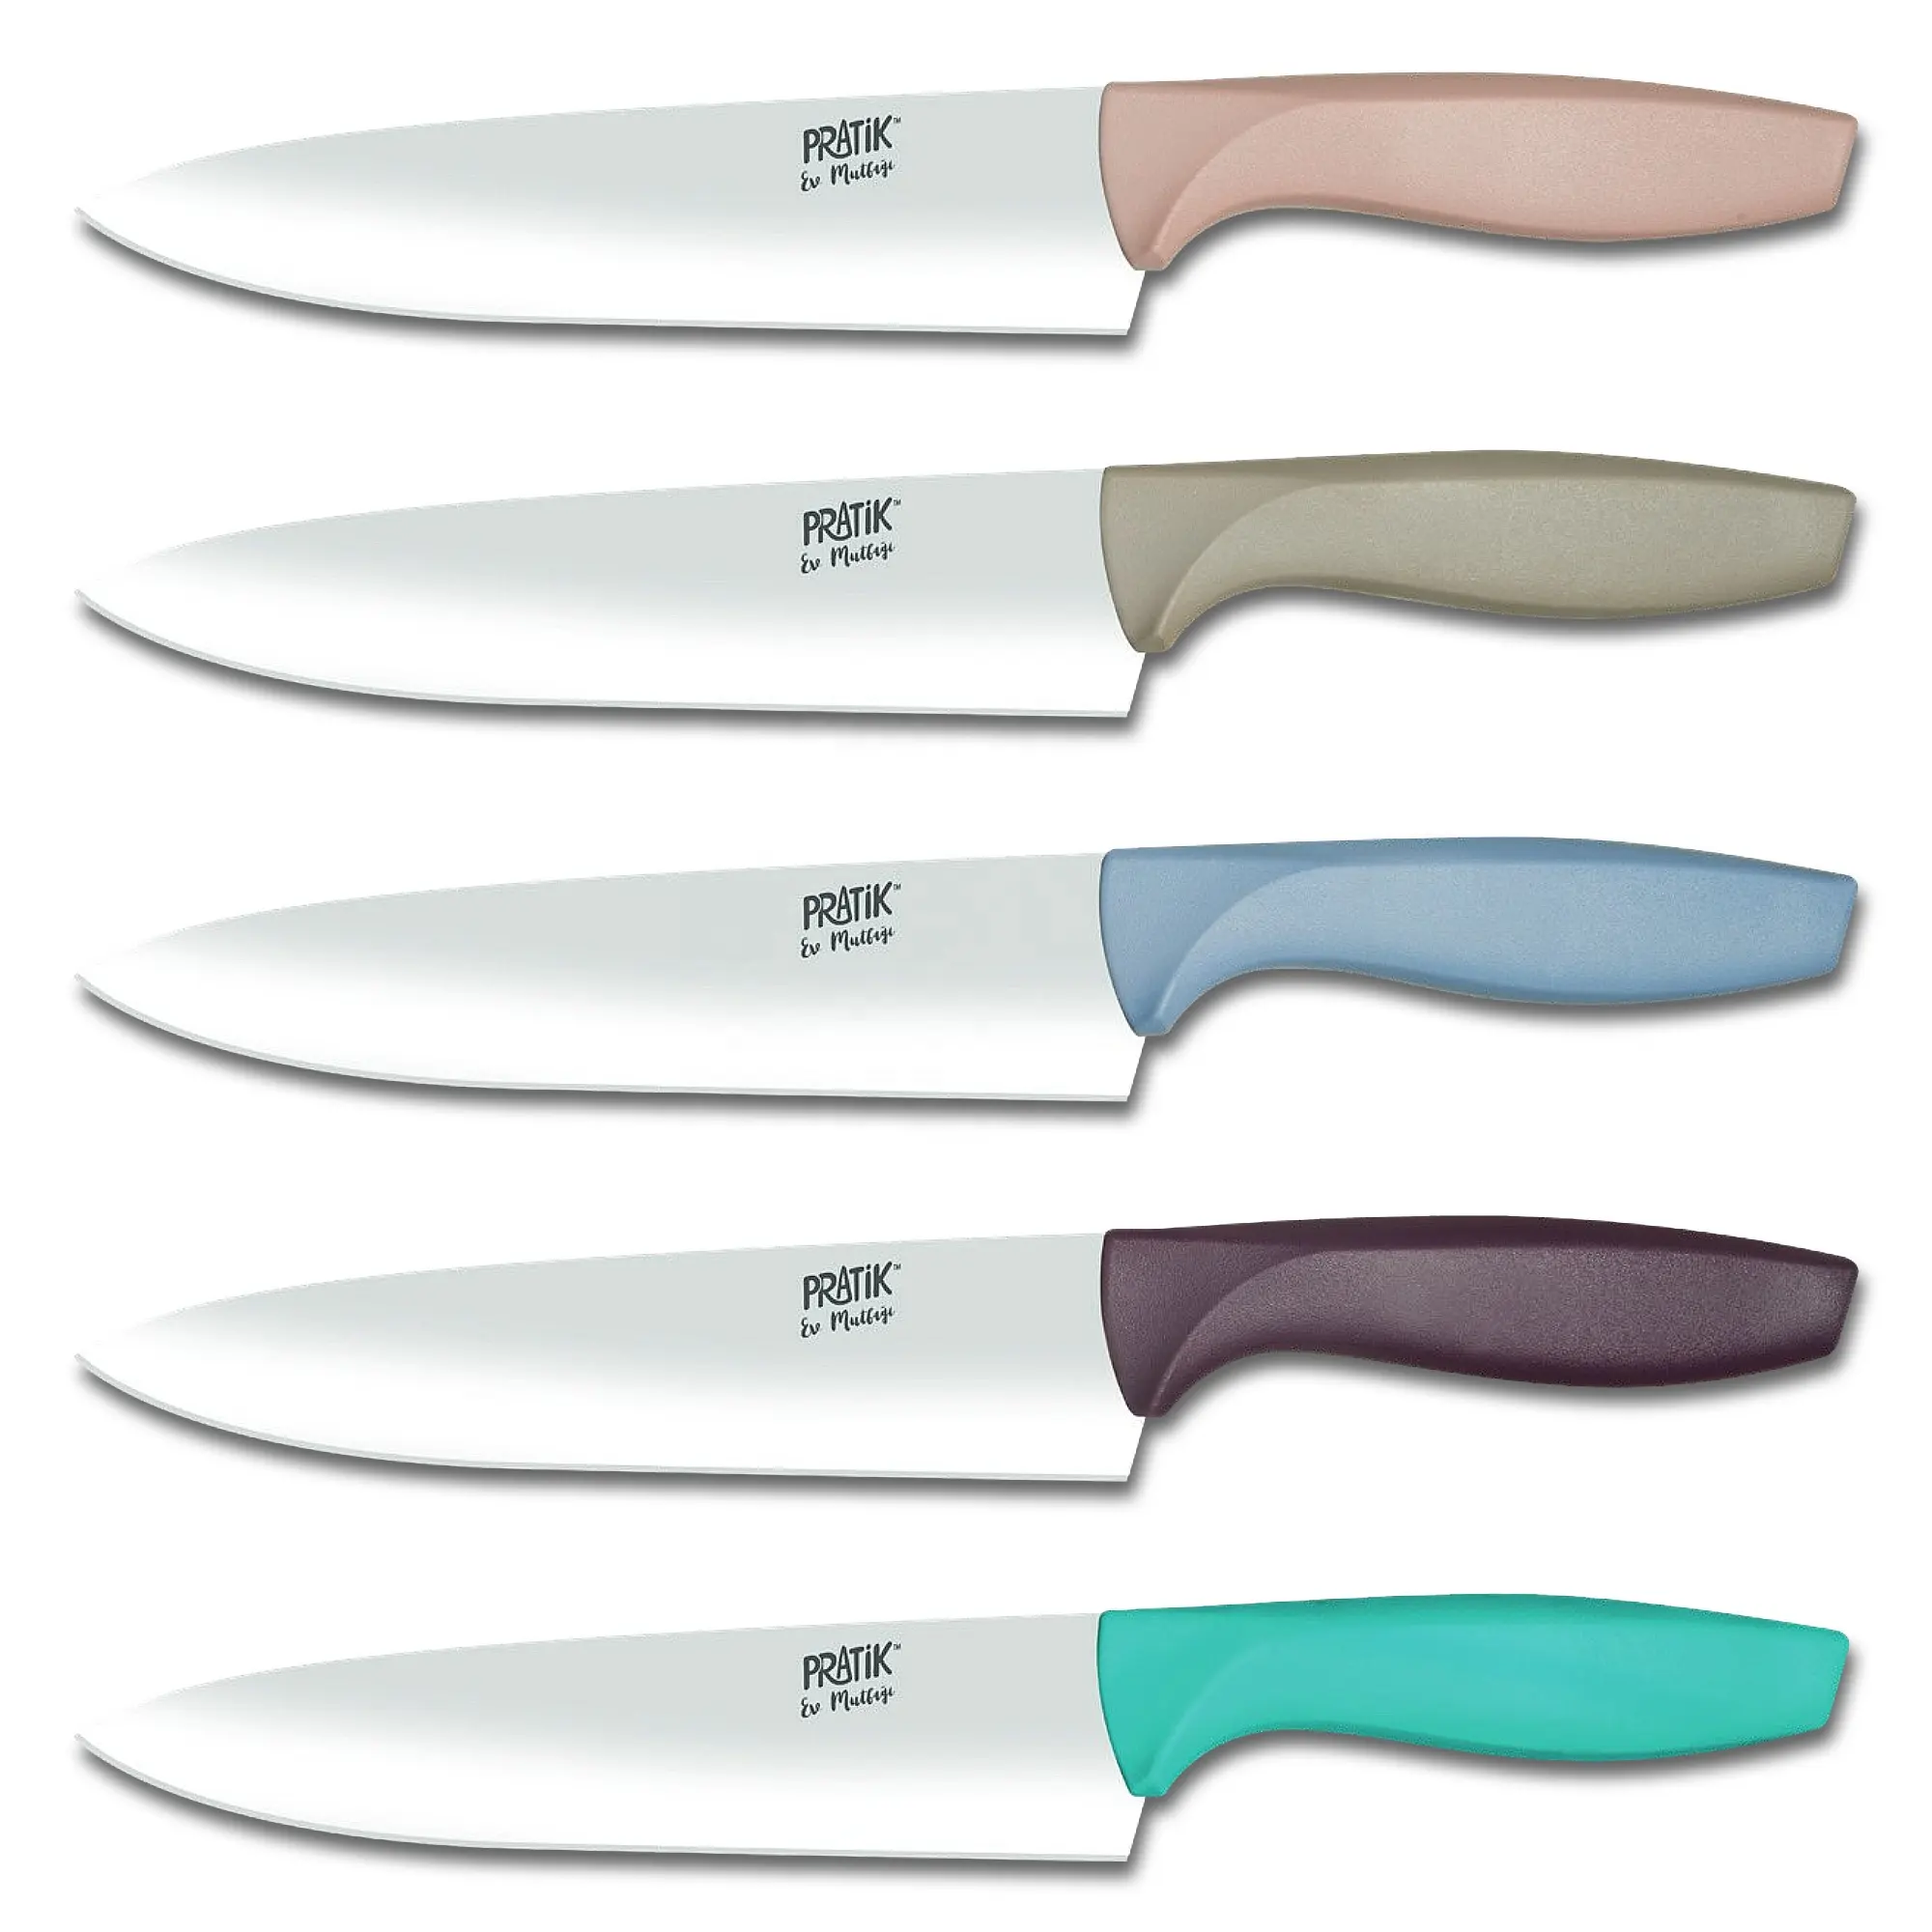 Pratik Home Chef Knife 18 cm-Cuchillo de Chef de acero inoxidable-Cuchillo de Chef al por mayor-Cuchillo de Chef con mango de plástico-43231